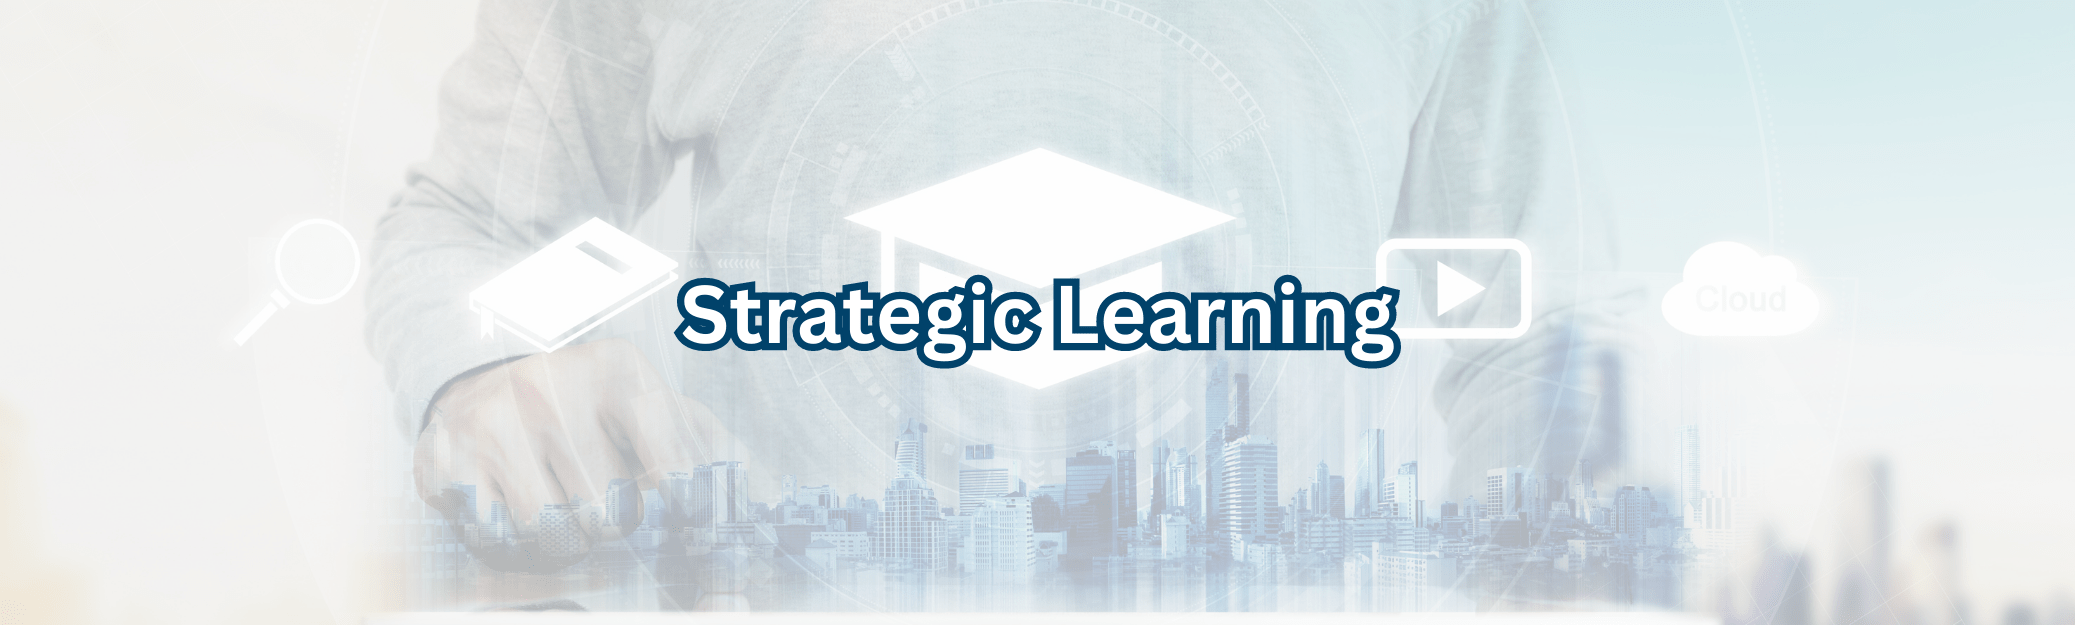 Strategic Learning website banner